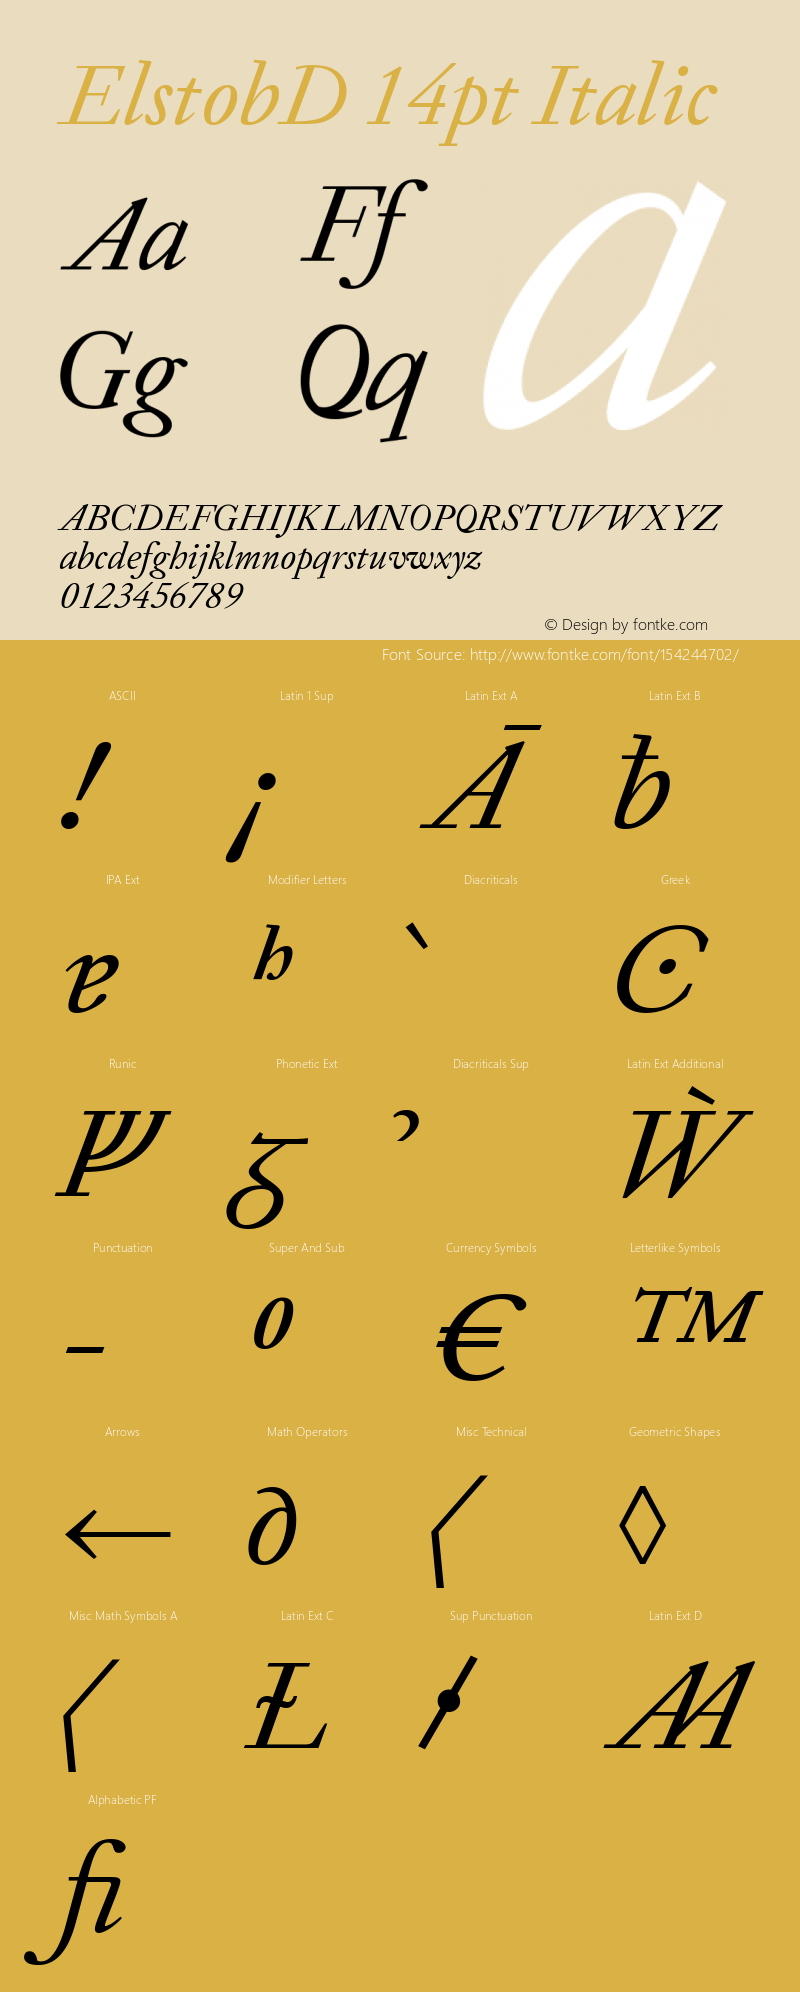 ElstobD 14pt Italic Version 1.013; ttfautohint (v1.8.3)图片样张